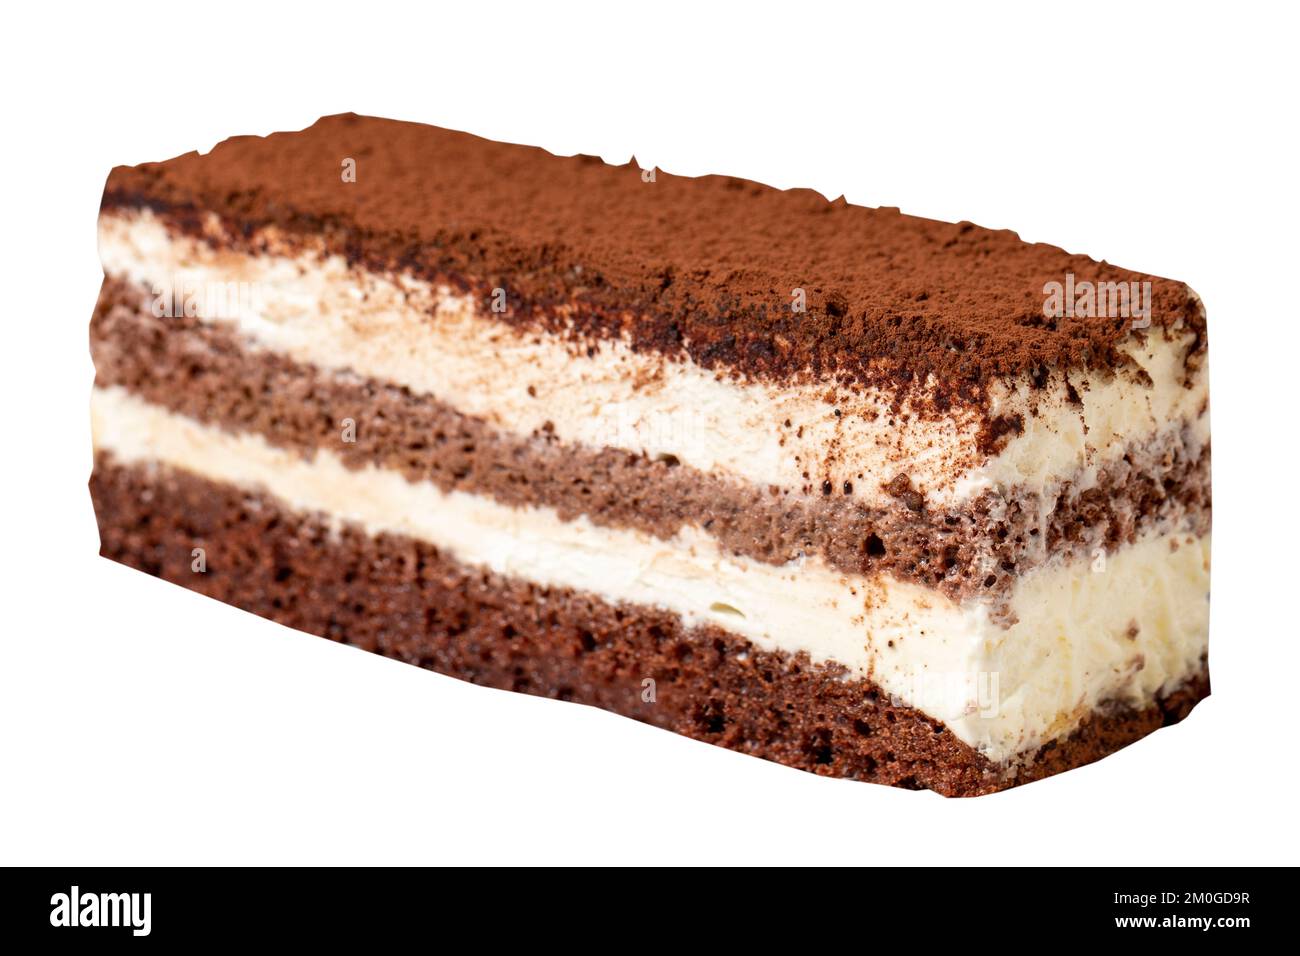 Tiramisu cake isolated on white background. Italian food culture. Bakery desserts. close up Stock Photo